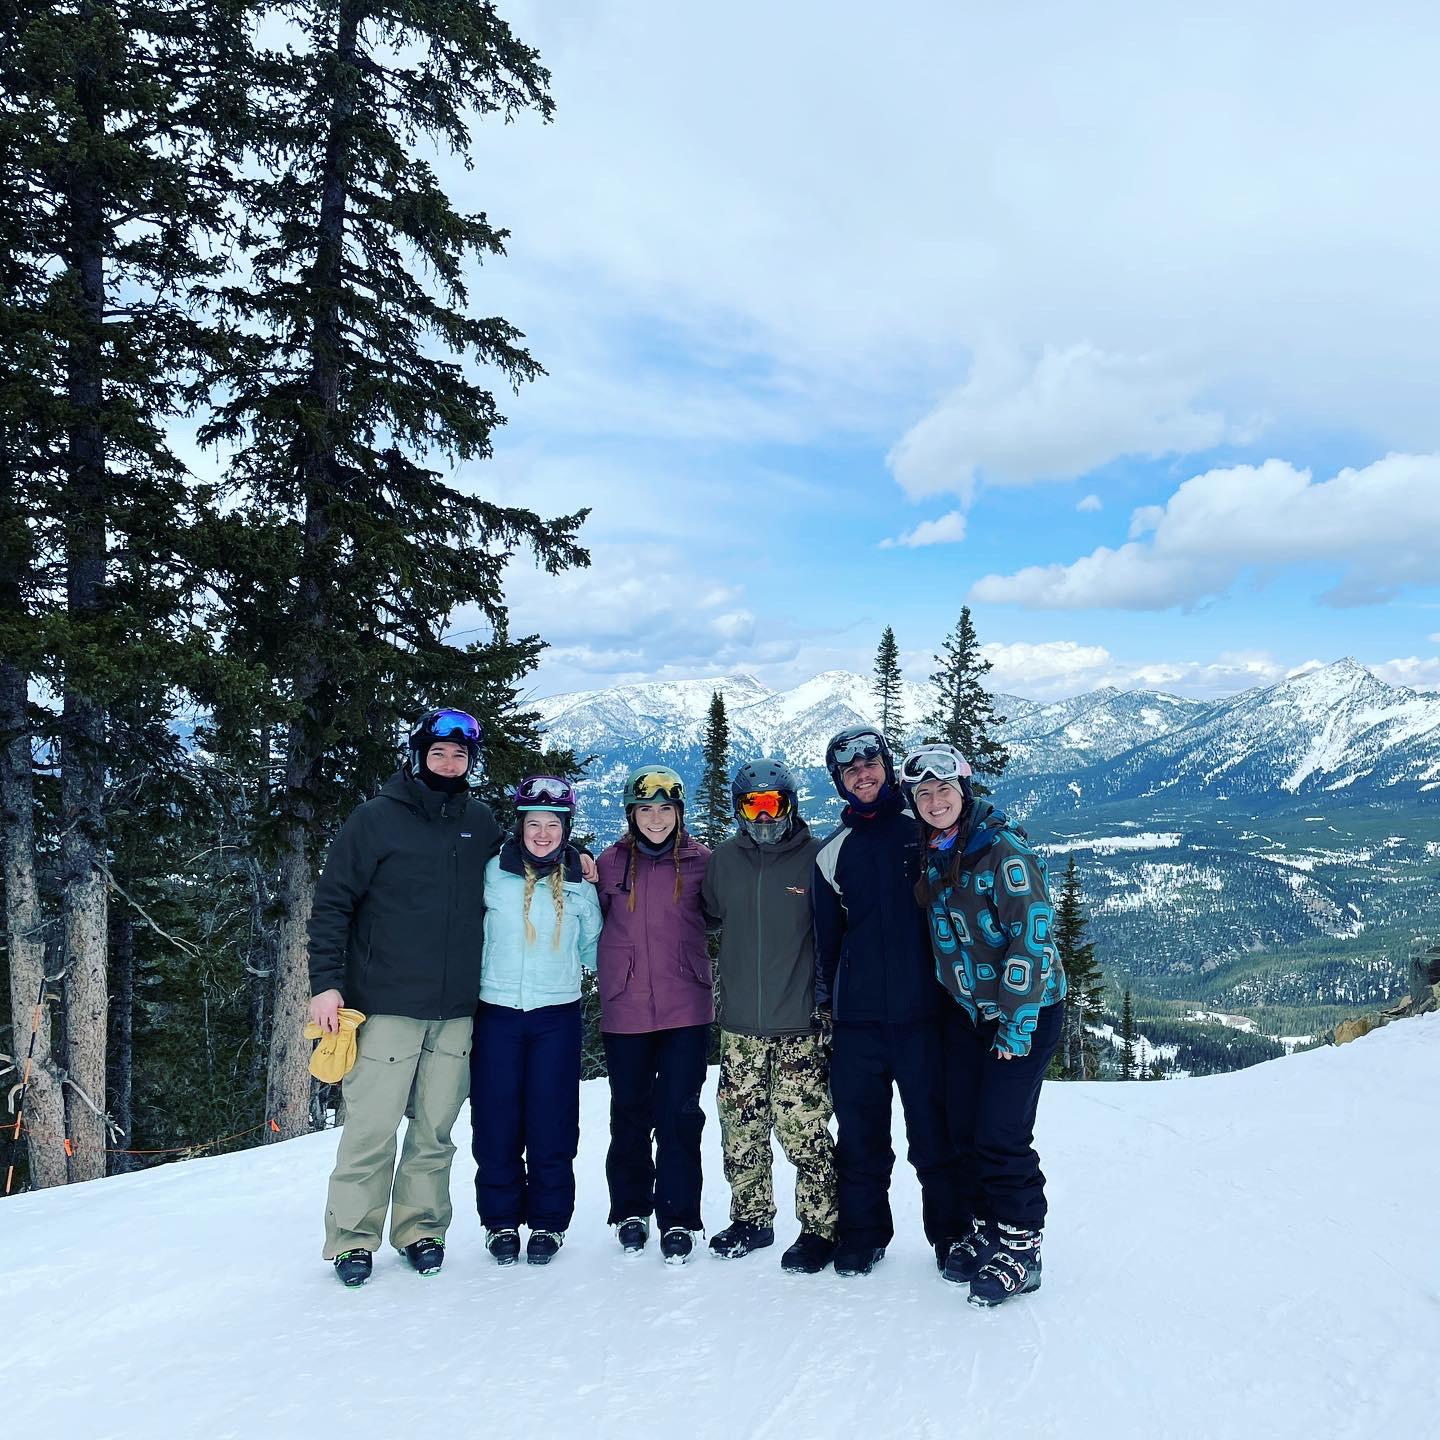 Friend Ski Trip